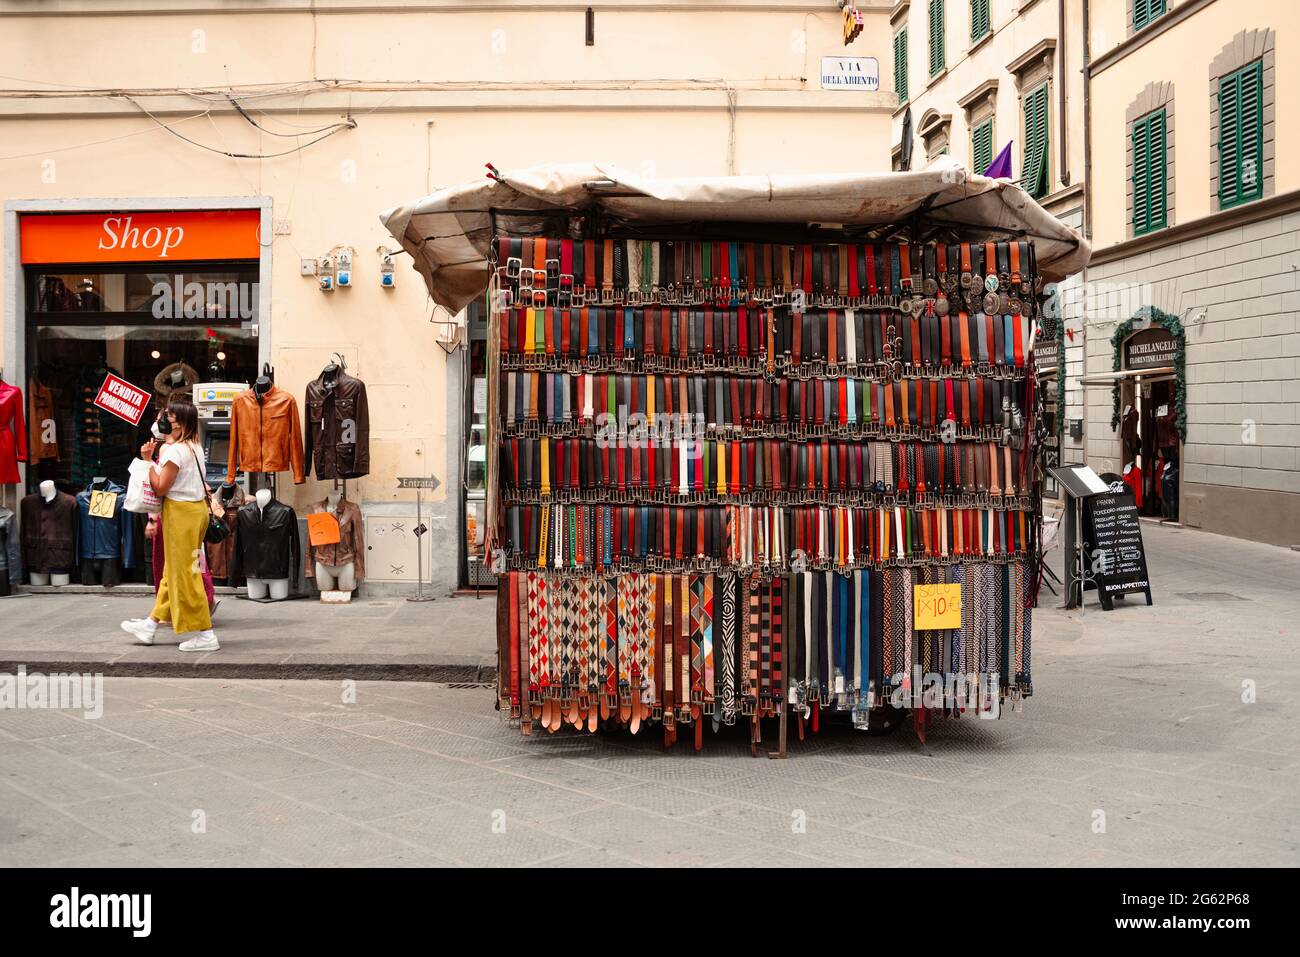 Magasin de cuir et de ceinture sur mercato di san lorenzo, via dell'ariento, Florence, Italie Banque D'Images